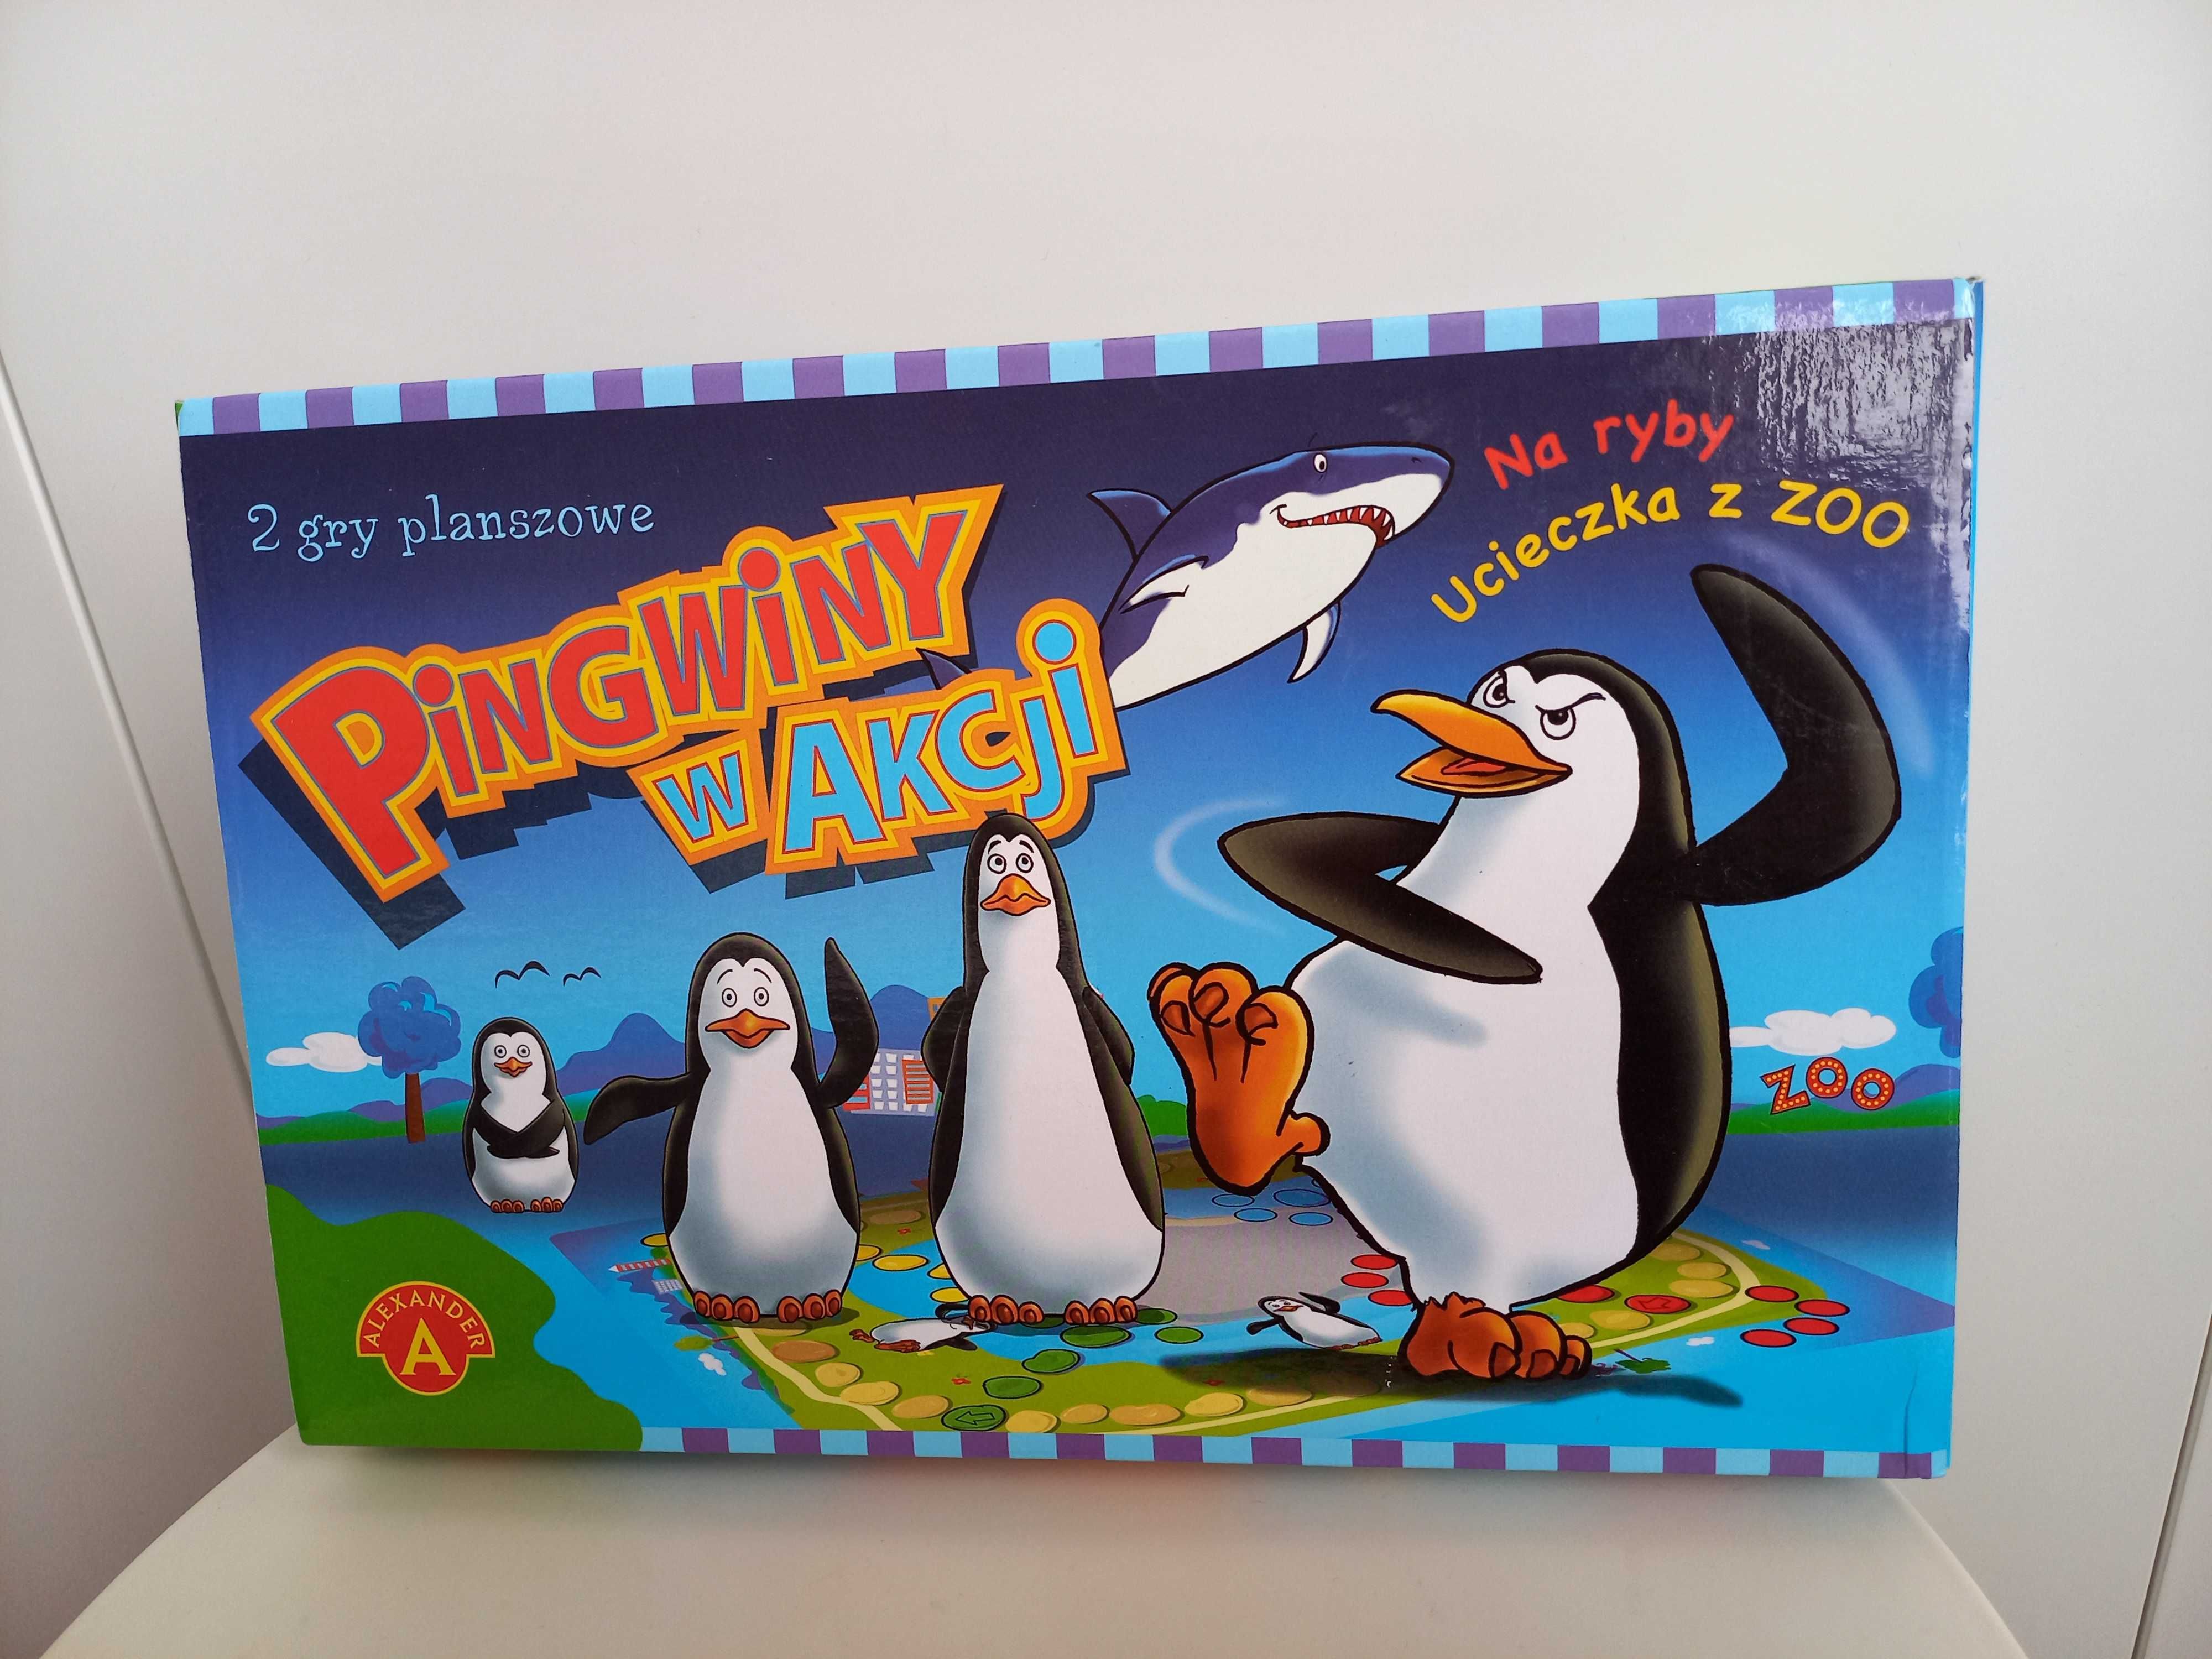 Gra Pingwiny w Akcji 2w1